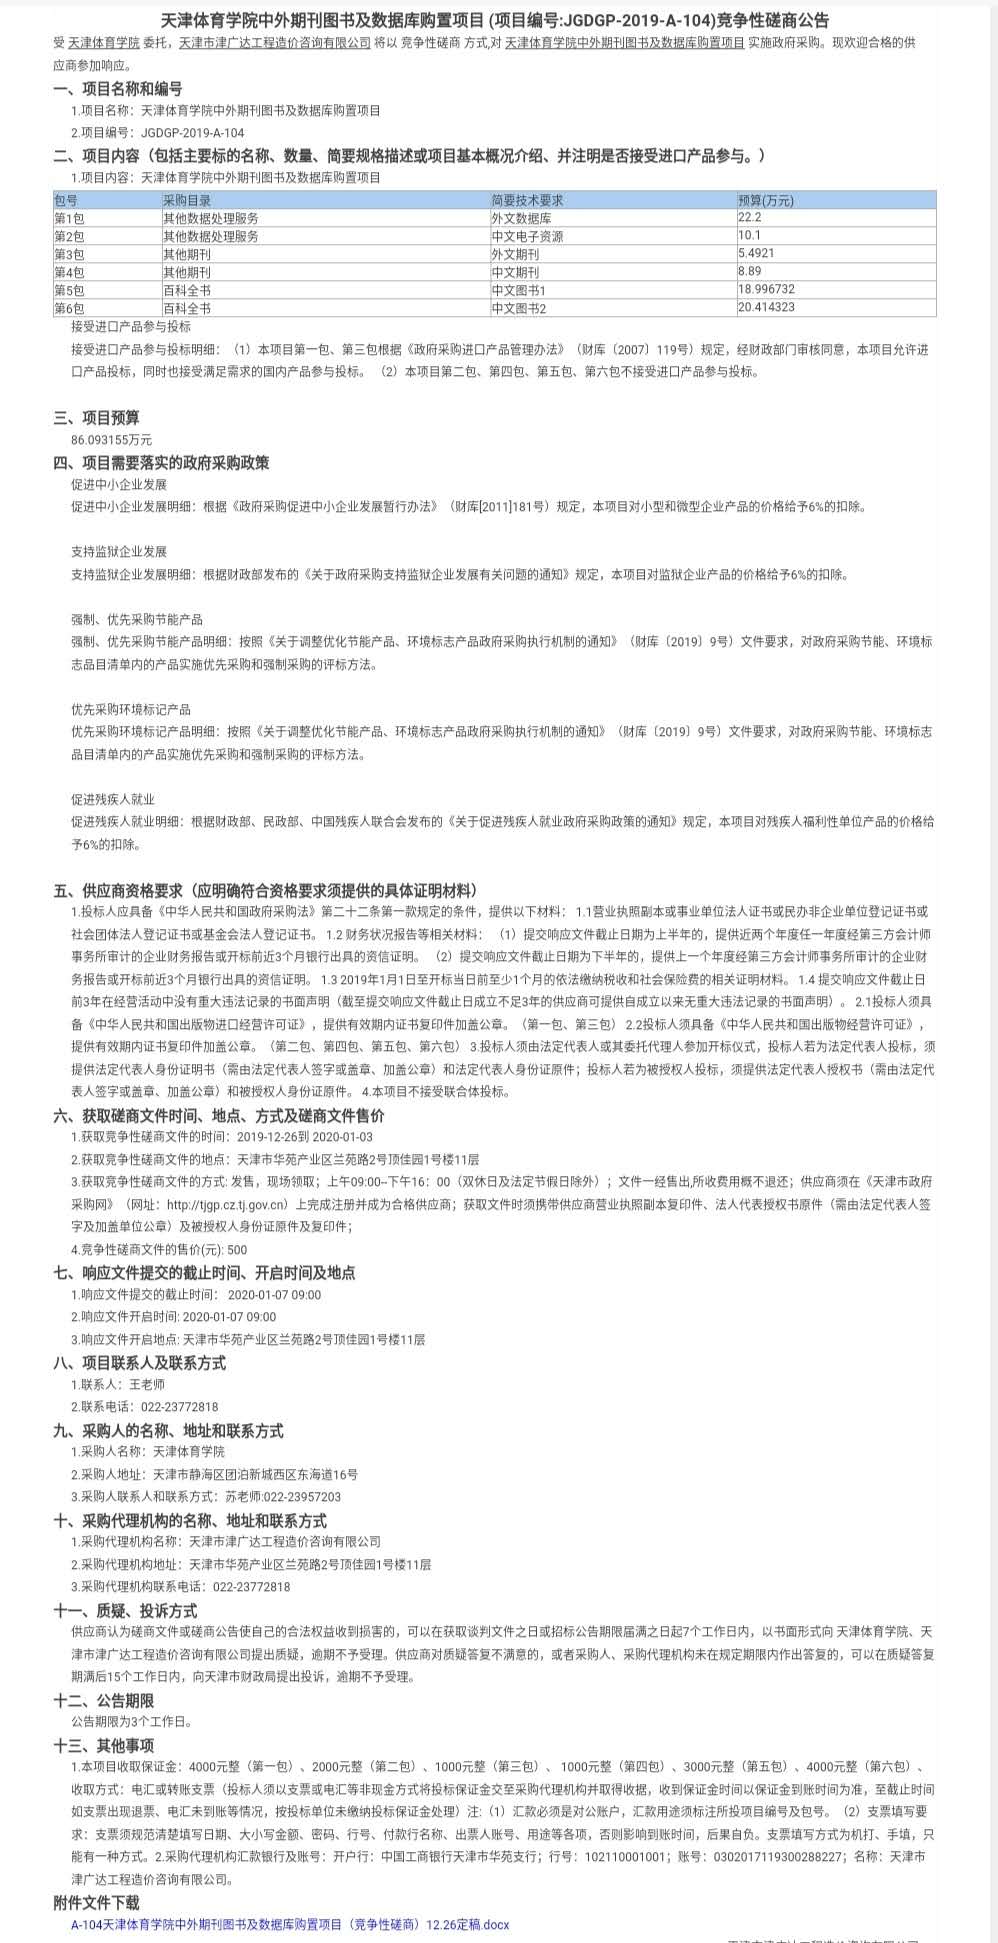 天津体育学院中外期刊图书及数据库购置项目(图1)